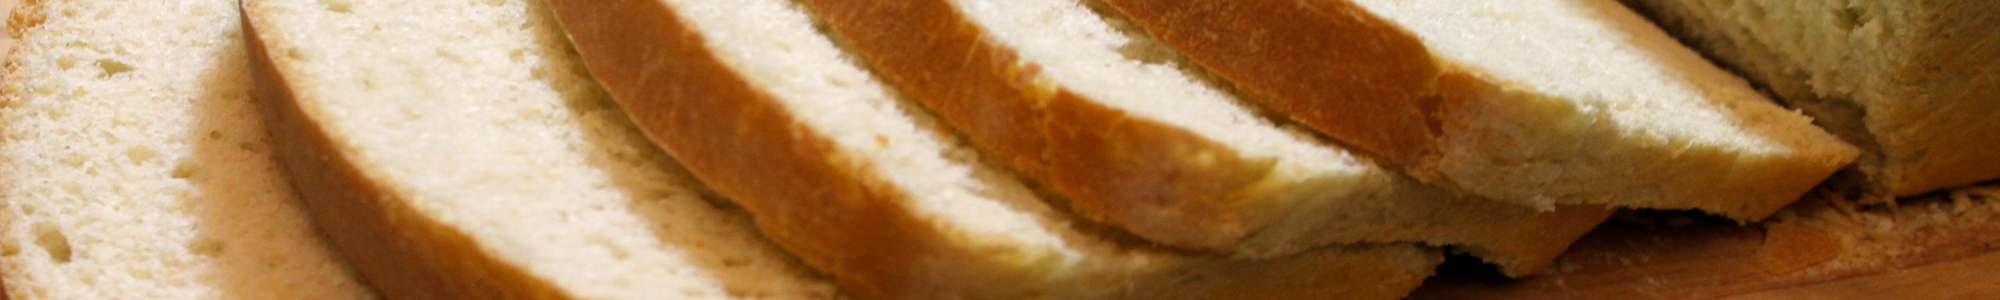 pan blanco y gluten